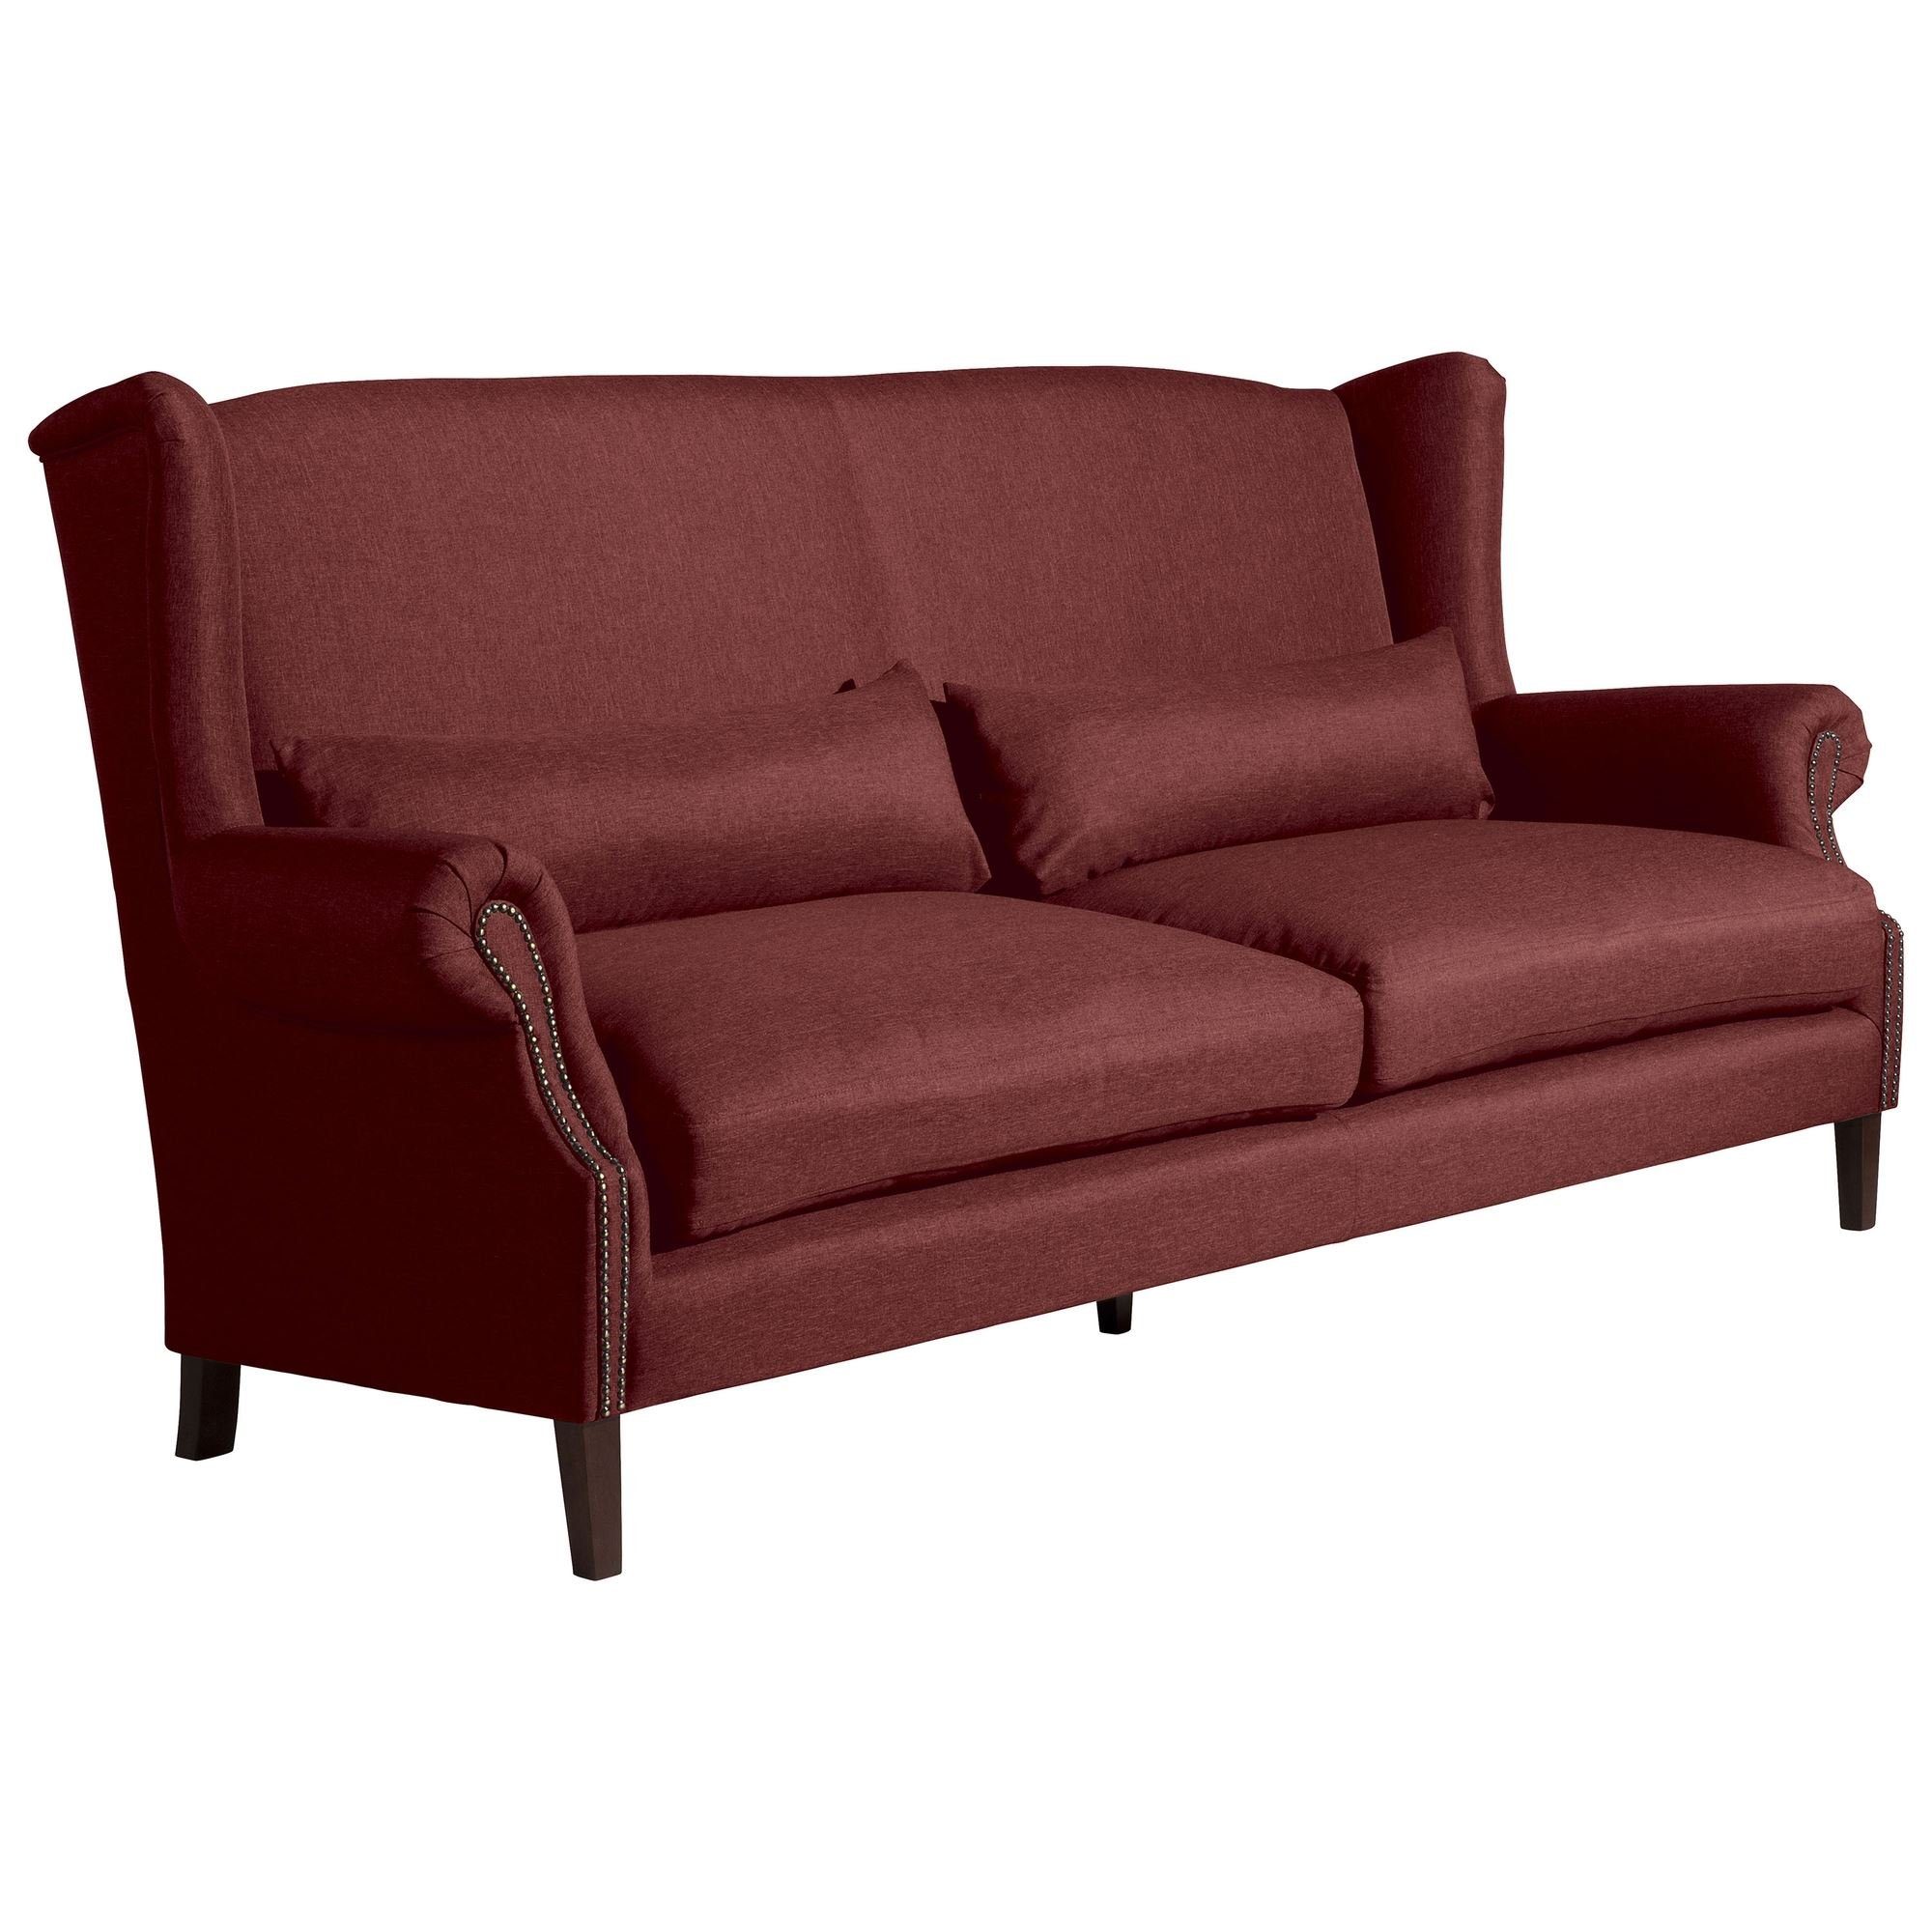 Kessel Sofa aufm Versand Kandy 1 Bezug Kostenlosem verarbeitet,bequemer Sofa (2-geteilt) Flachgewebe, hochwertig Sitz inkl. Sparpreis 58 Teile, 3-Sitzer